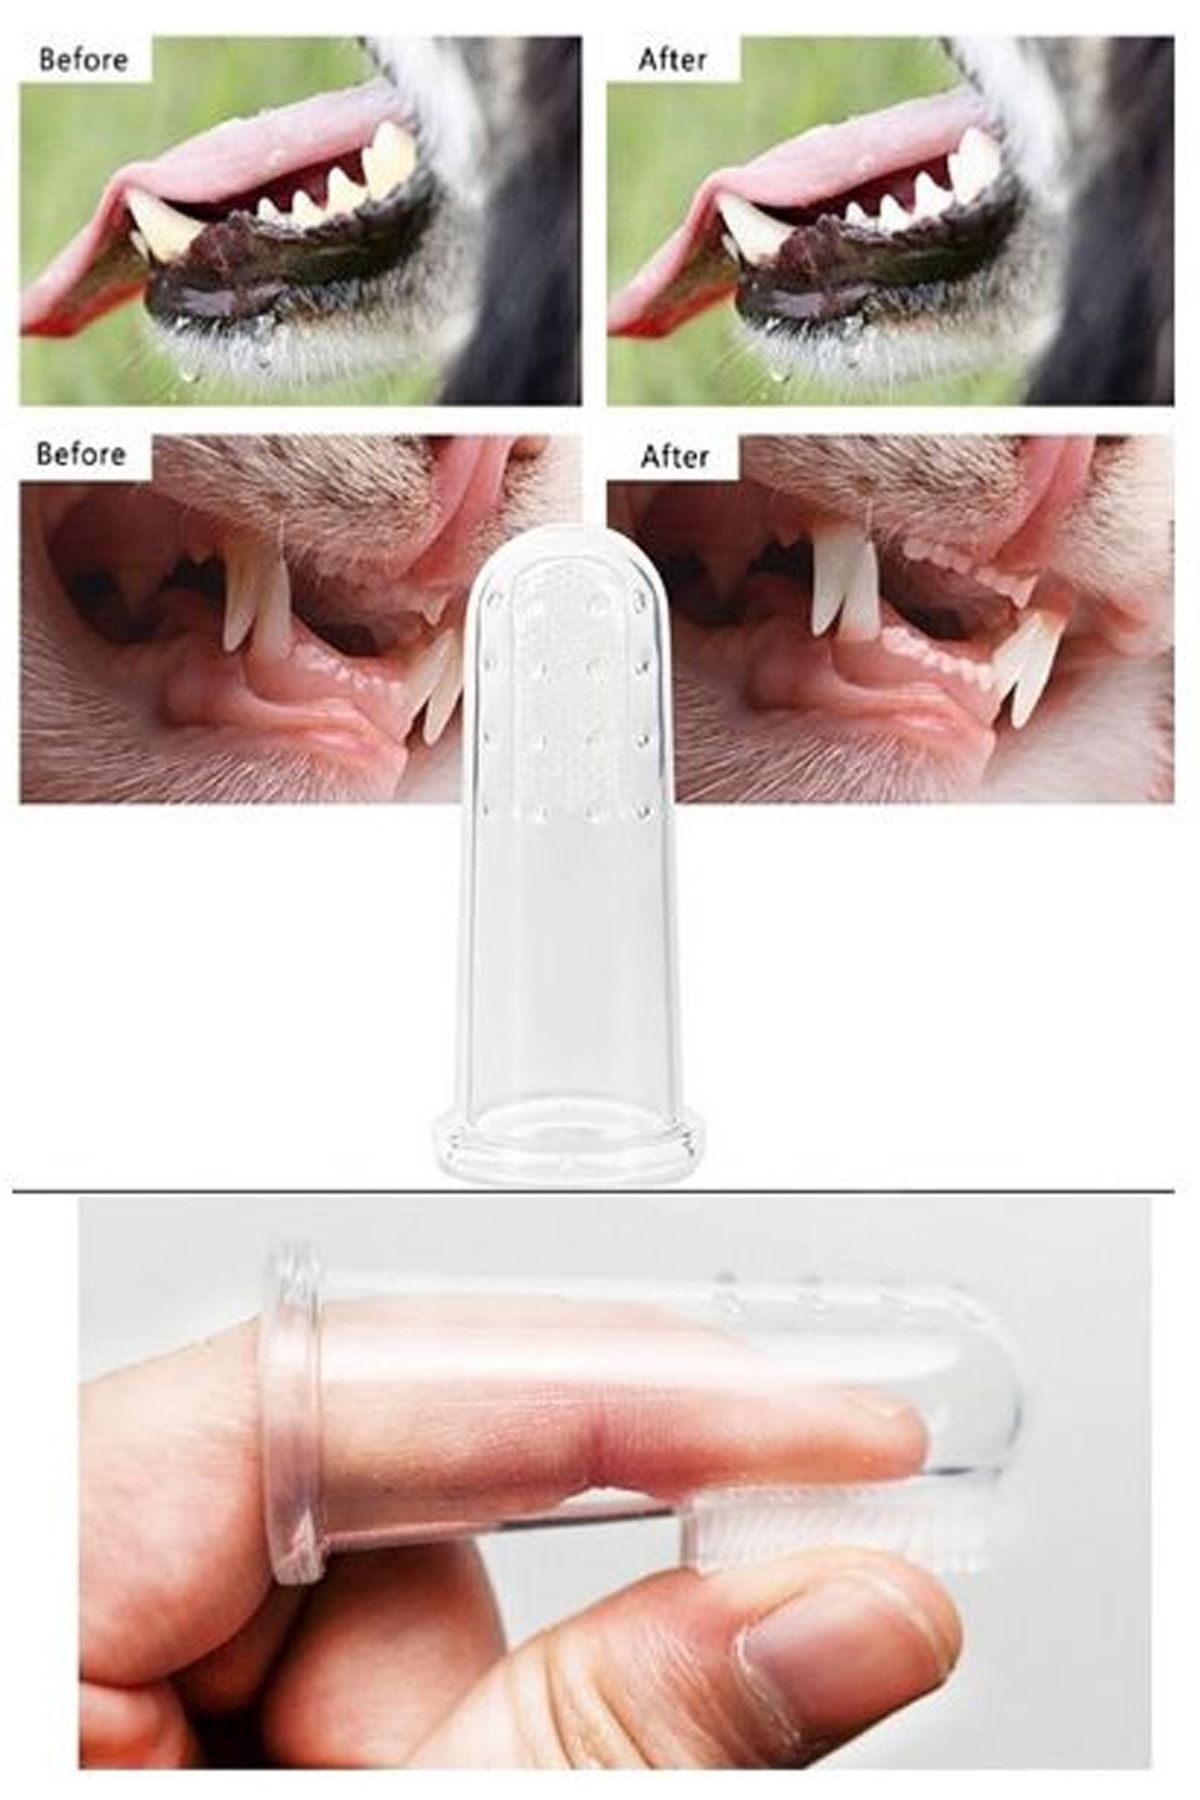 rianka % 100 Medikal Gıda Kalitesinde Zararlı Madde Içermeyen Kedi Köpek Diş Temizleme Fırçası